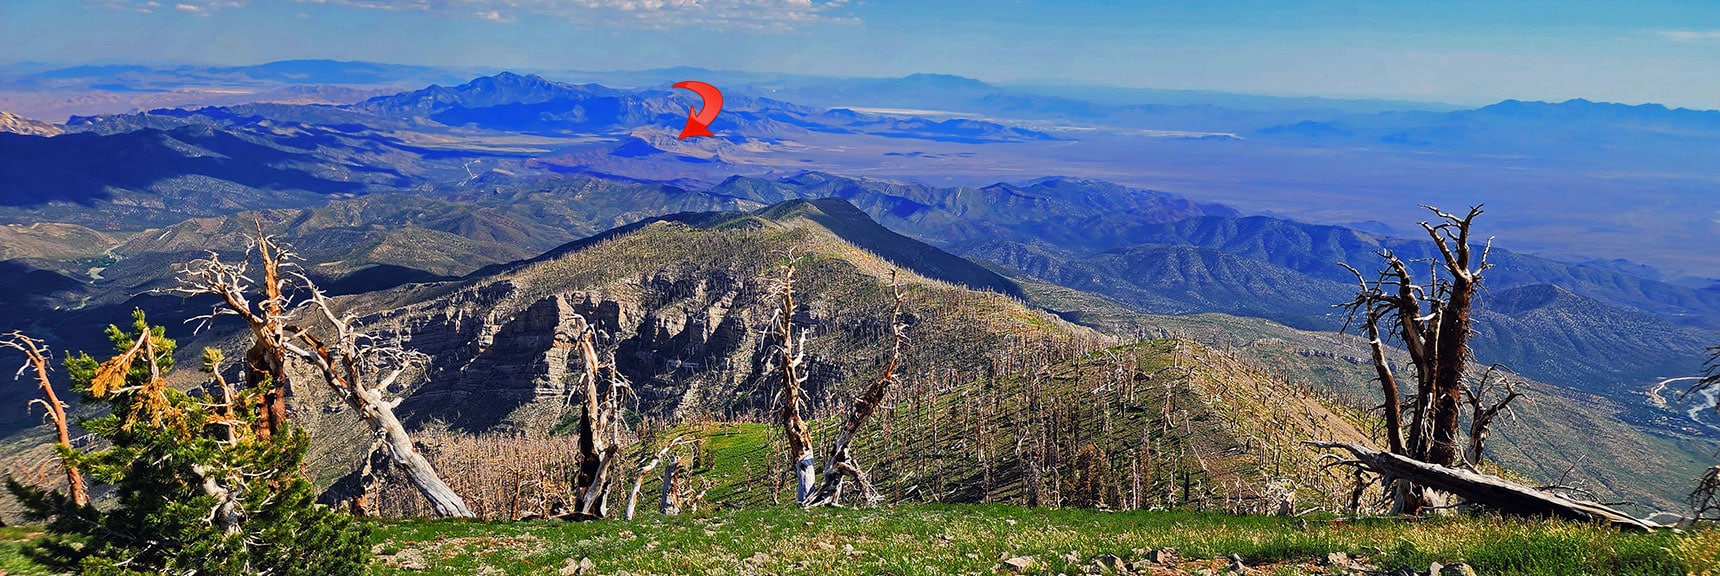 Landmark Bluff from Griffith Peak at Summit of Sexton Ridgeline | Landmark Bluff | Lovell Canyon, Nevada